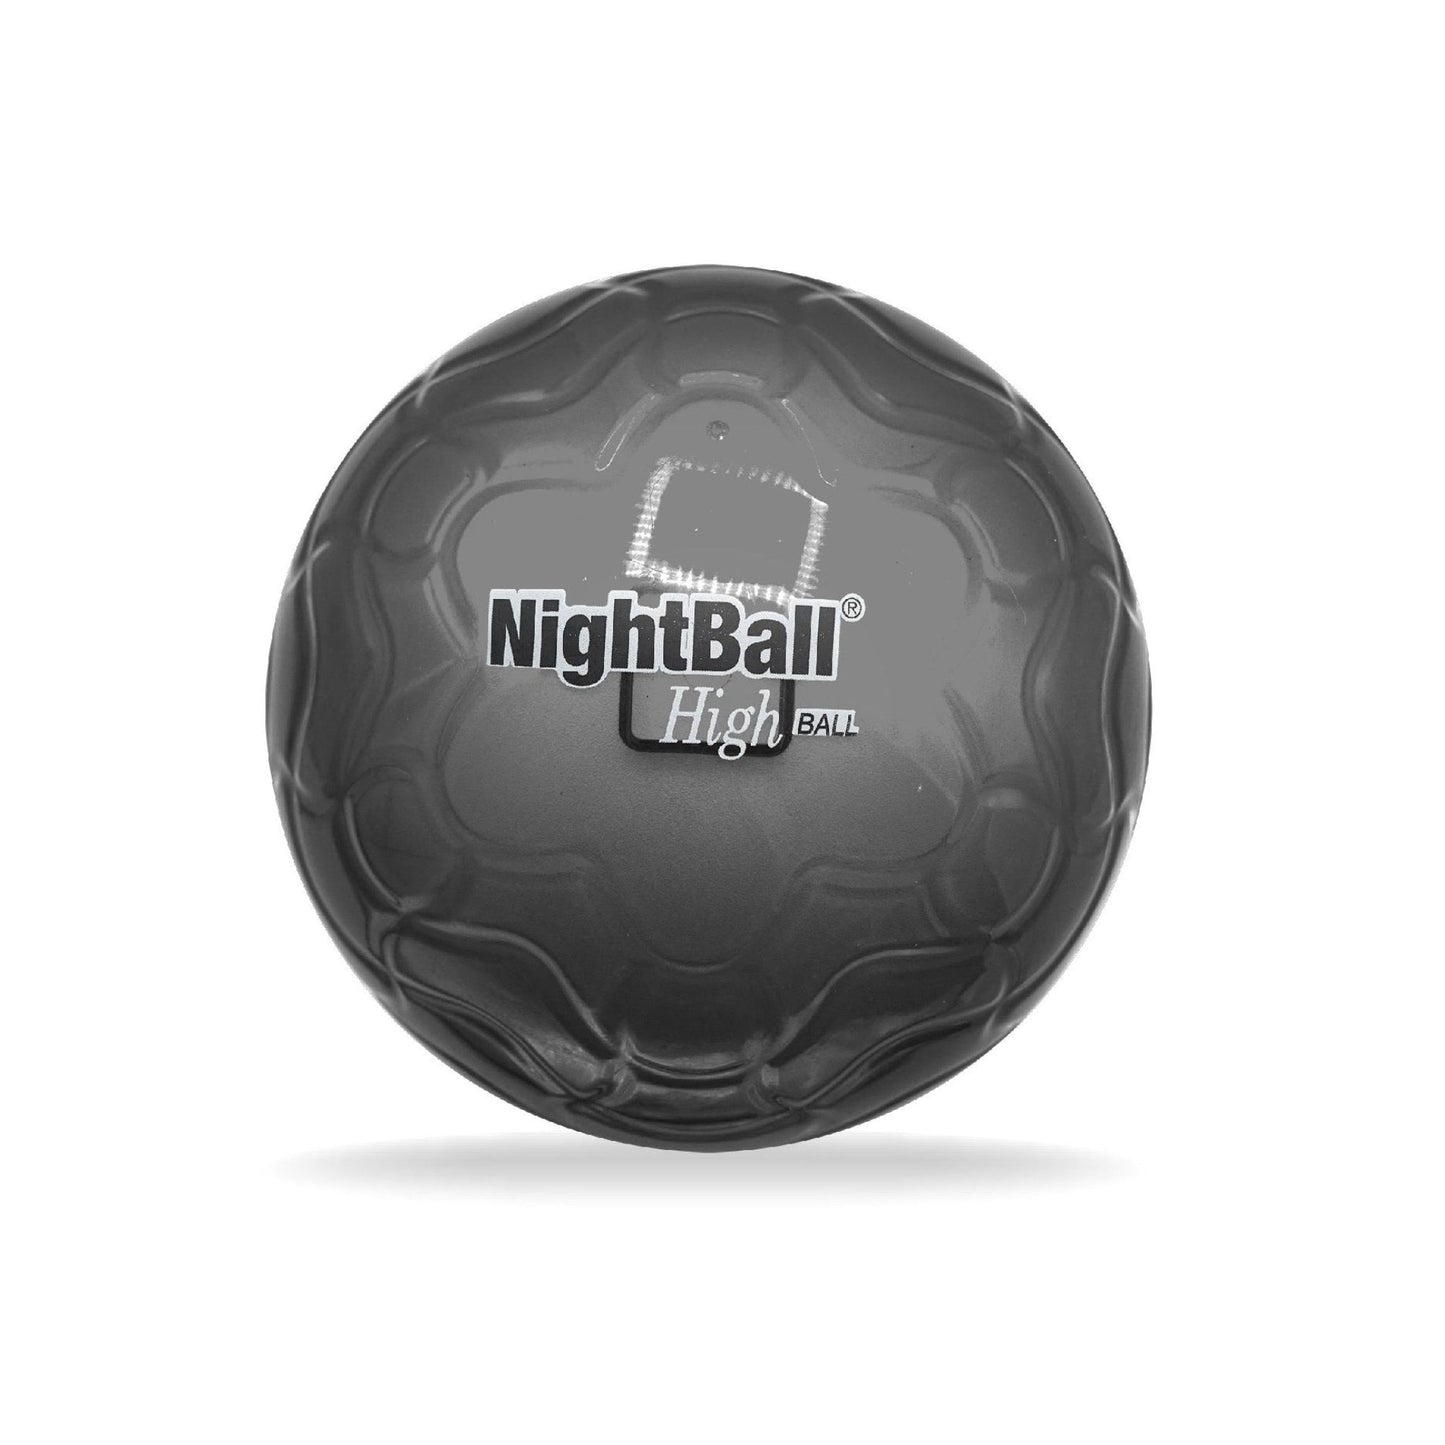 Tangle NightBall High Ball